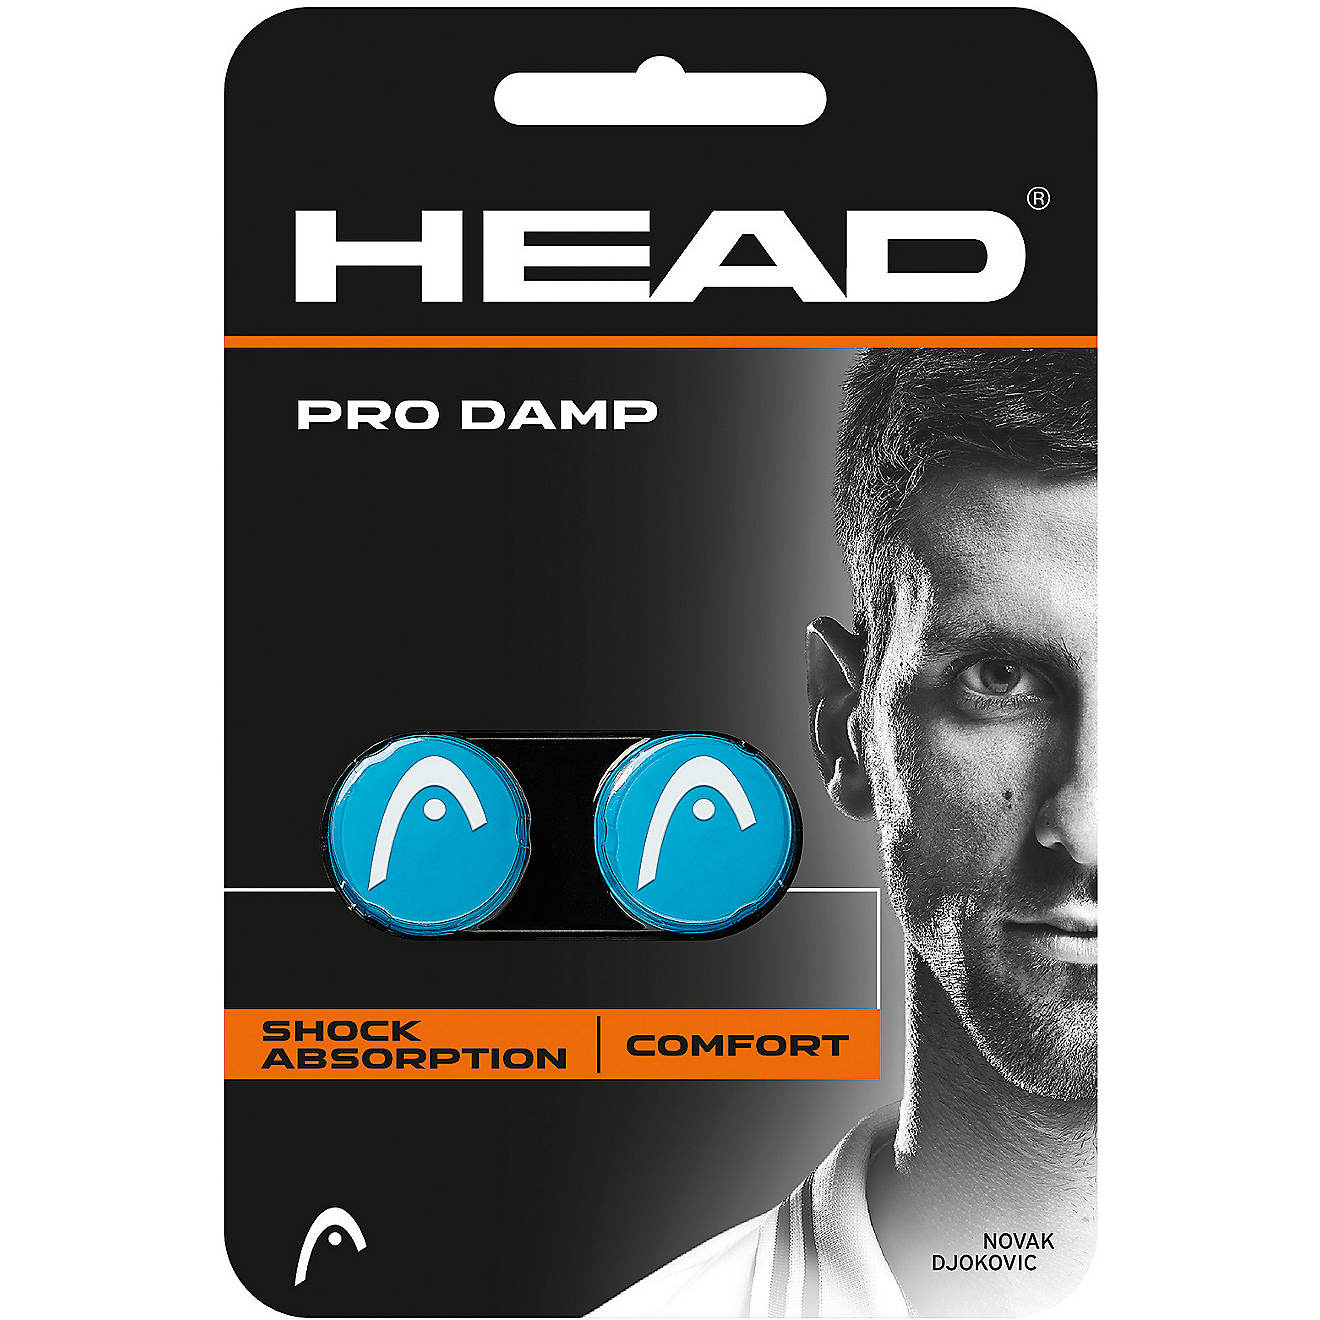 Head Pro Damp Vibration Dampener Blue